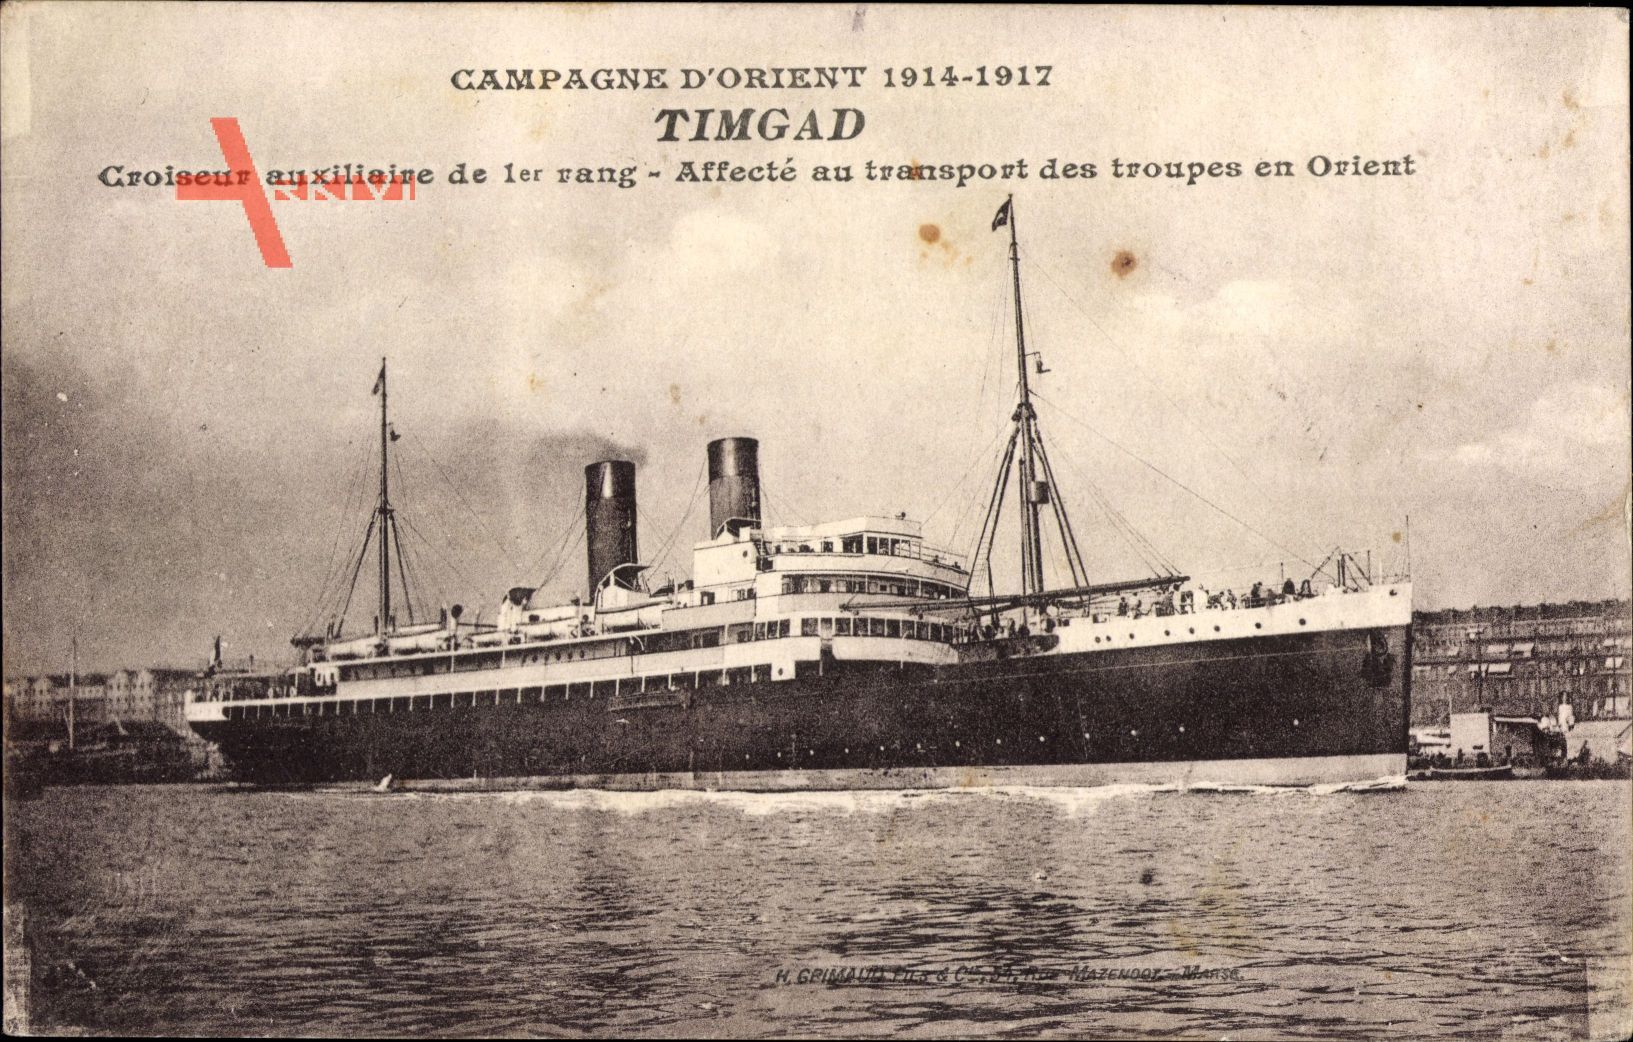 Croiseur Auxiliaire Timgad de 1er rang, Transport des troupes en Orient